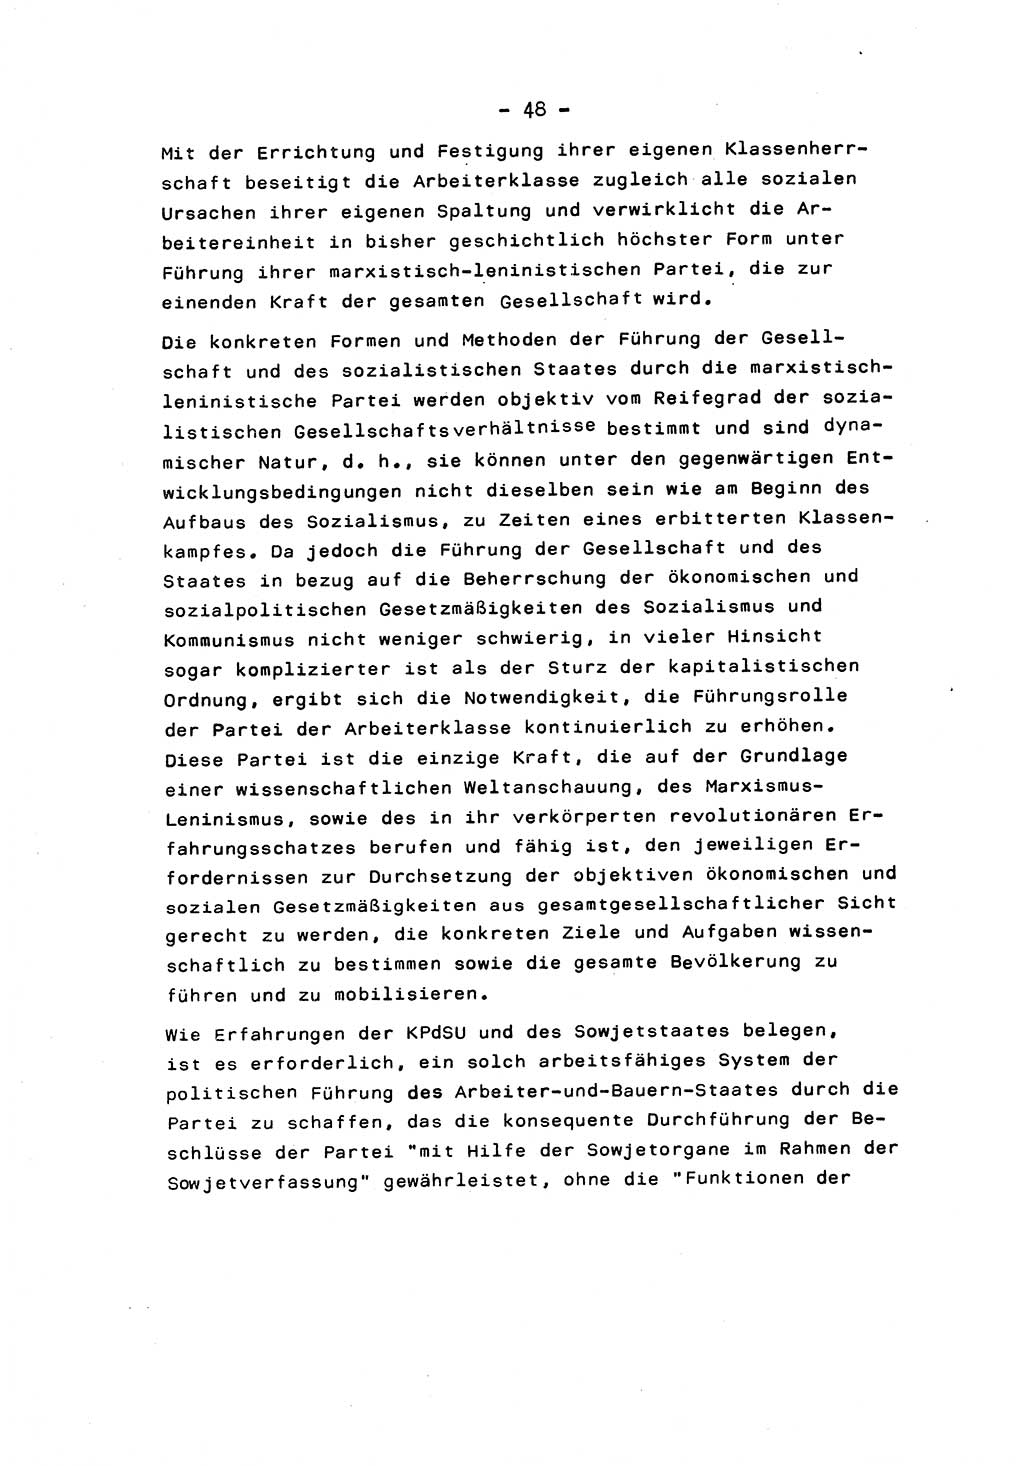 Marxistisch-leninistische Staats- und Rechtstheorie [Deutsche Demokratische Republik (DDR)] 1975, Seite 48 (ML St.-R.-Th. DDR 1975, S. 48)